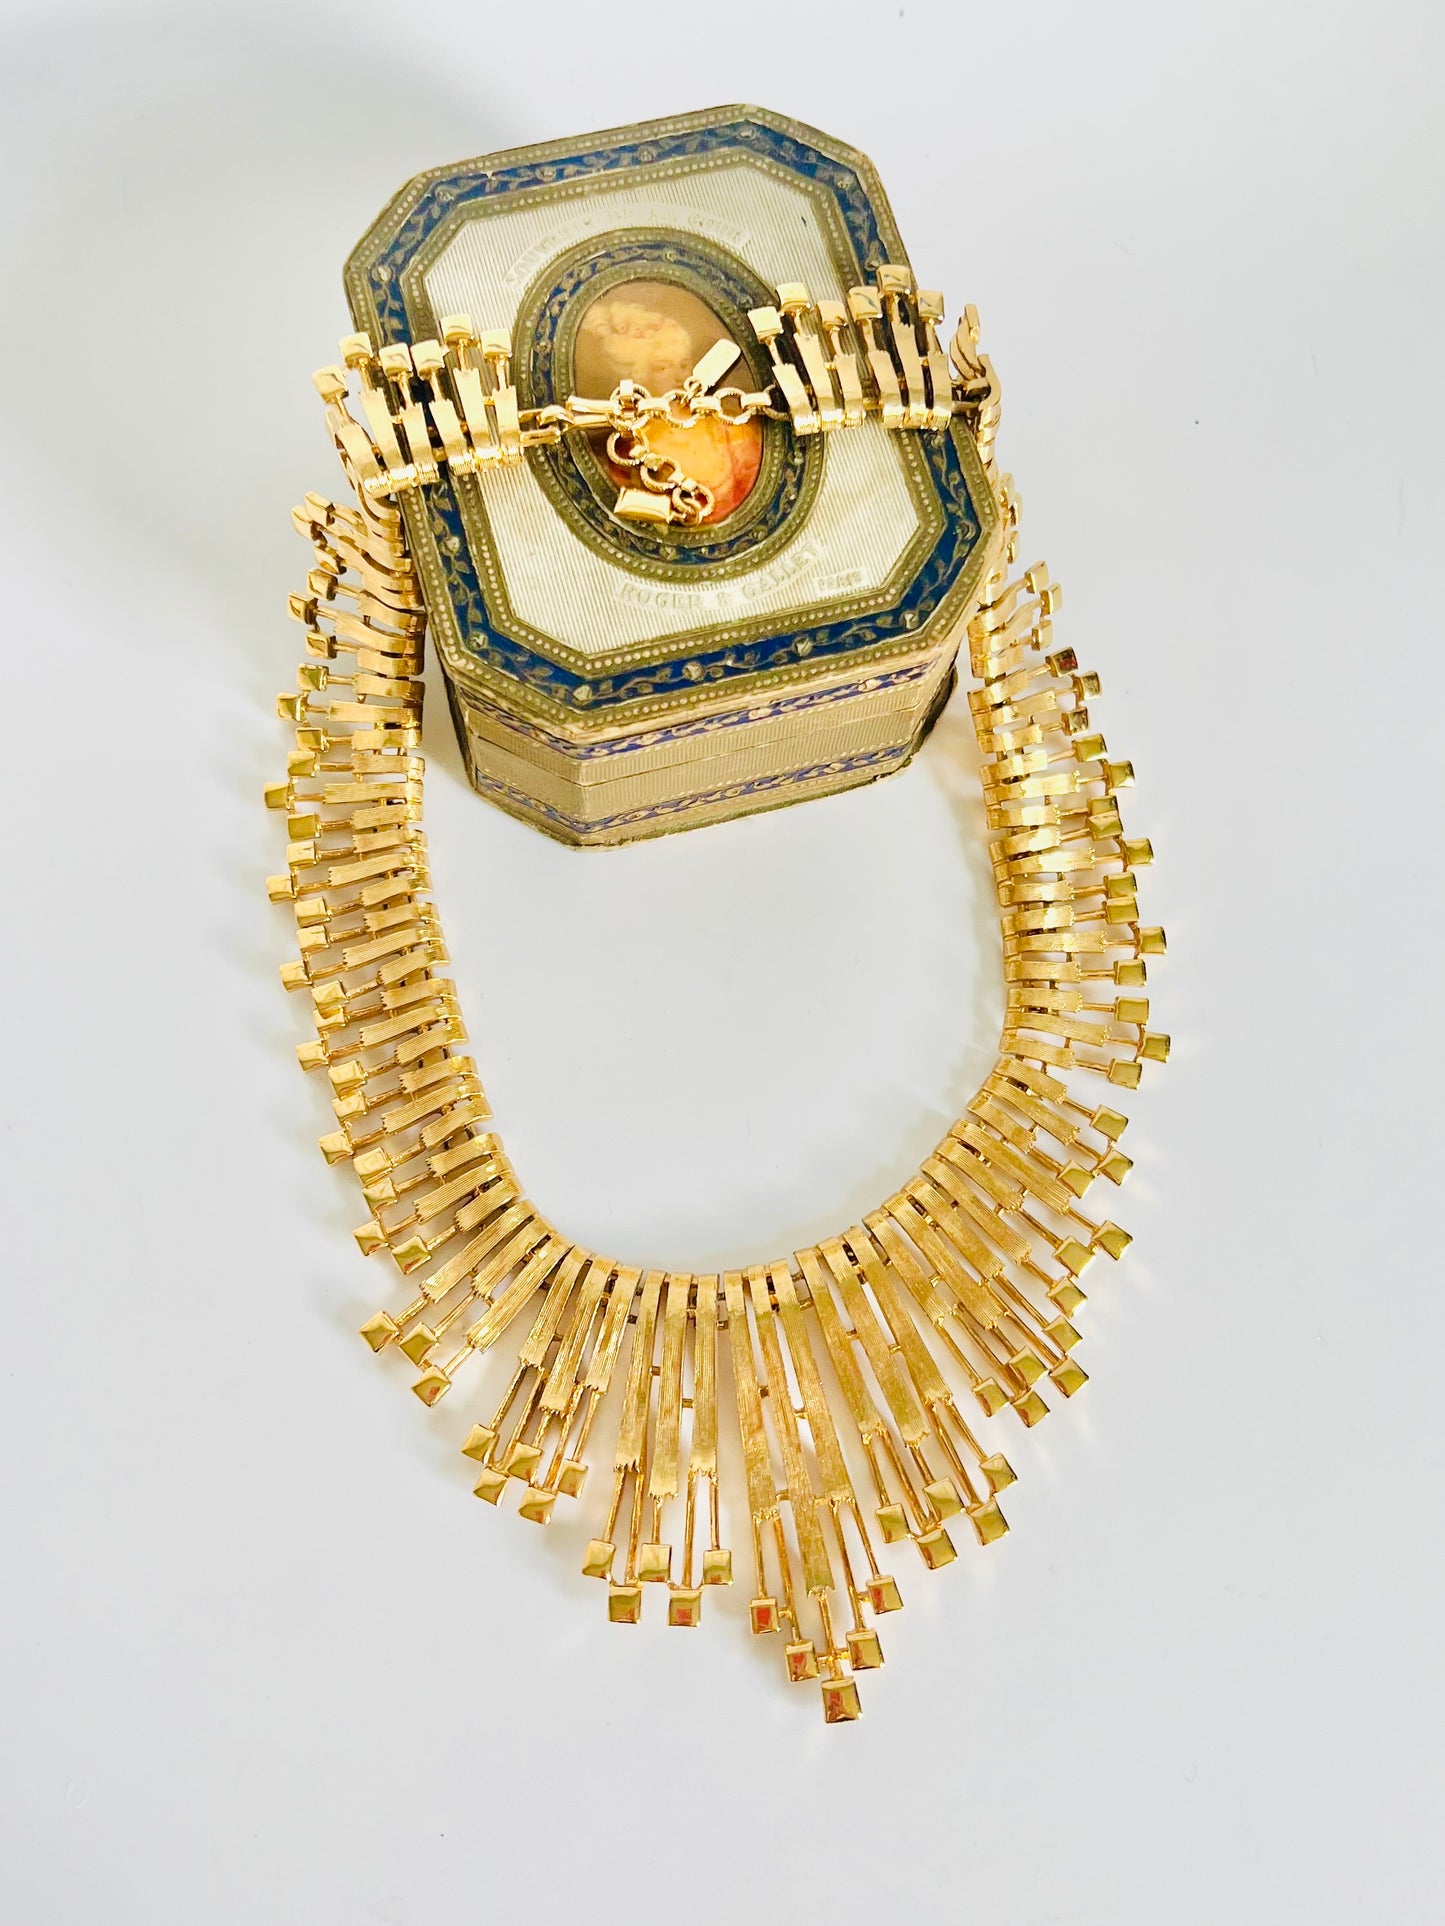 Vintage 1970s Monet Fantessa Gold Statement Necklace